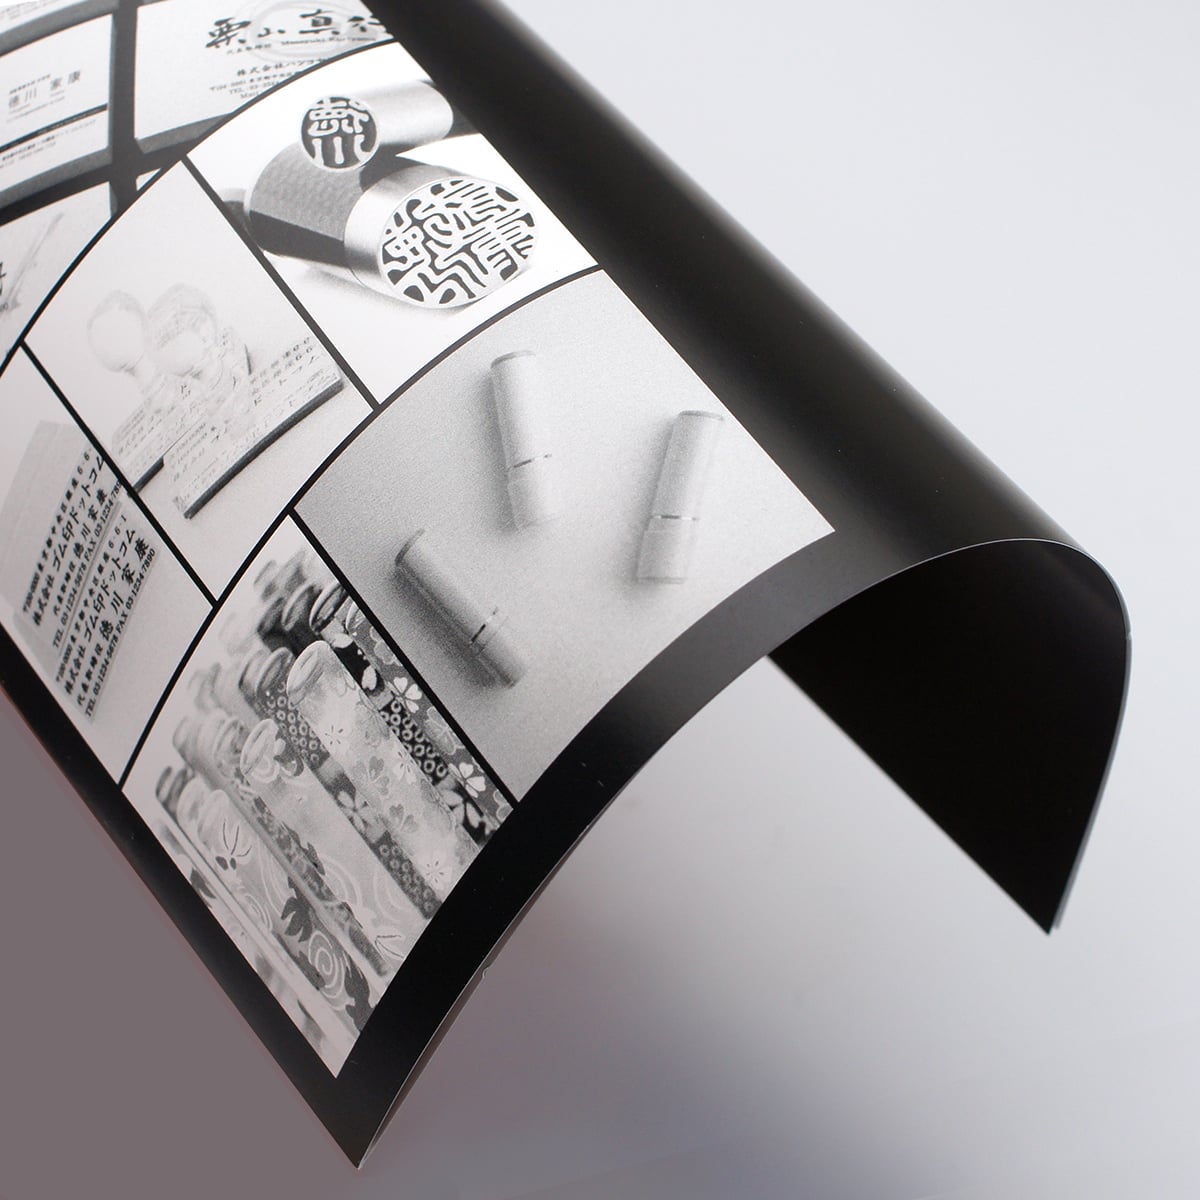 二つ折りパンフレット A4サイズ仕上げ 上質紙標準(135kg) 両面モノクロ印刷｜パンフレット印刷ドットコム